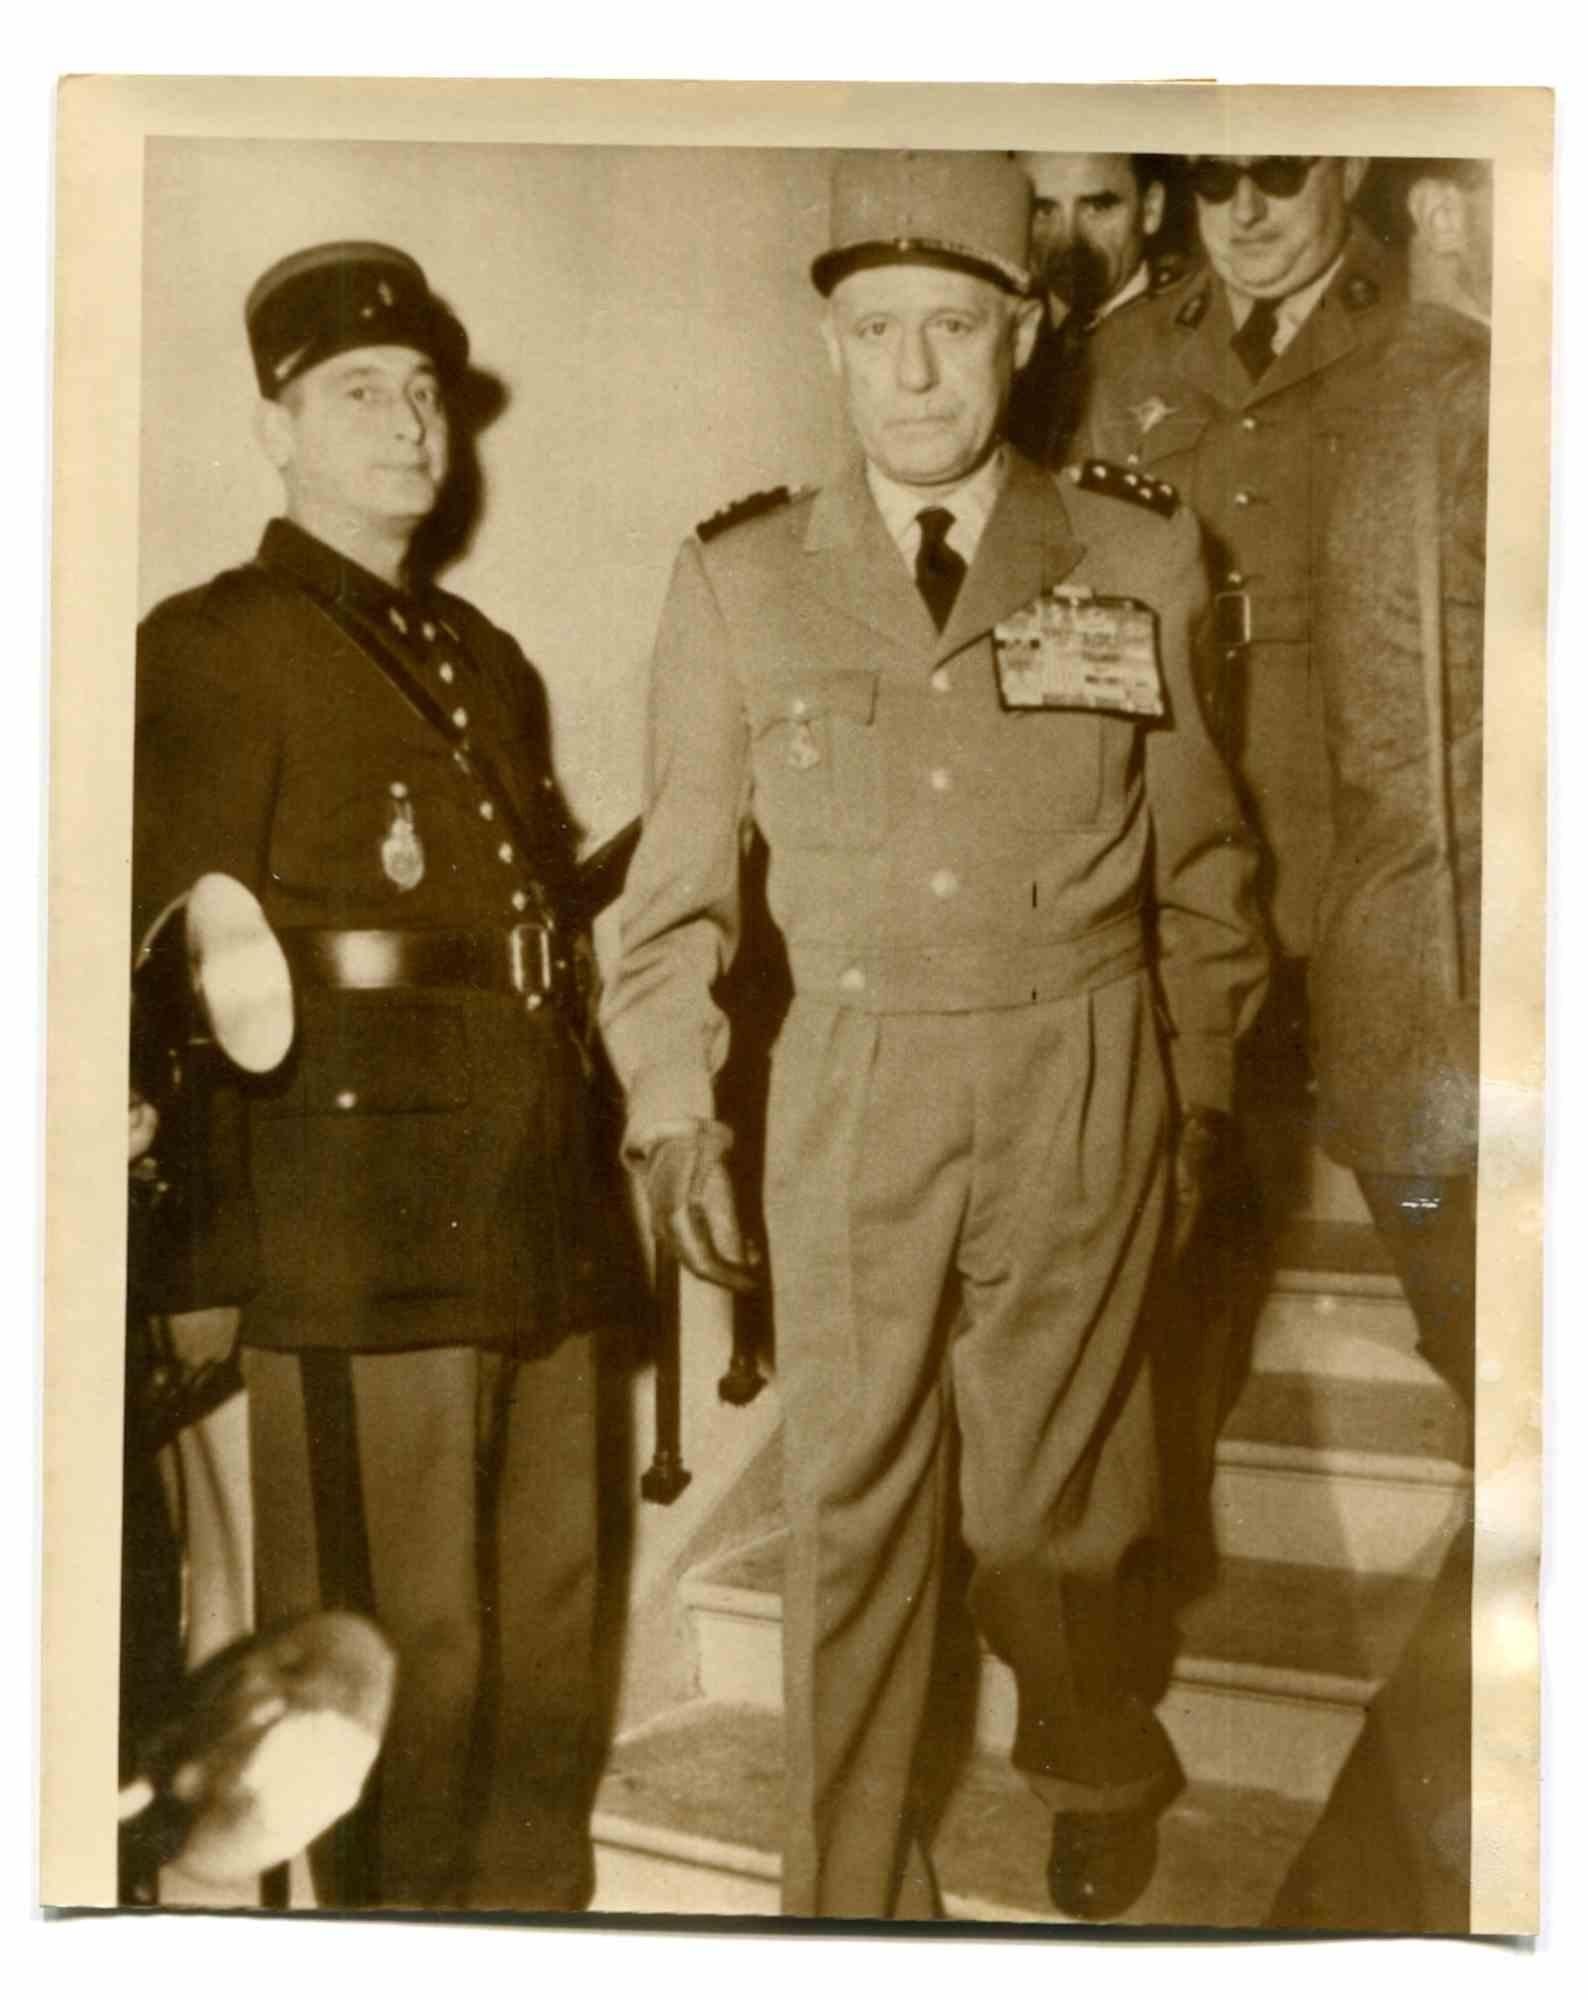 General Raoul Salan - Historical Photos -1950s